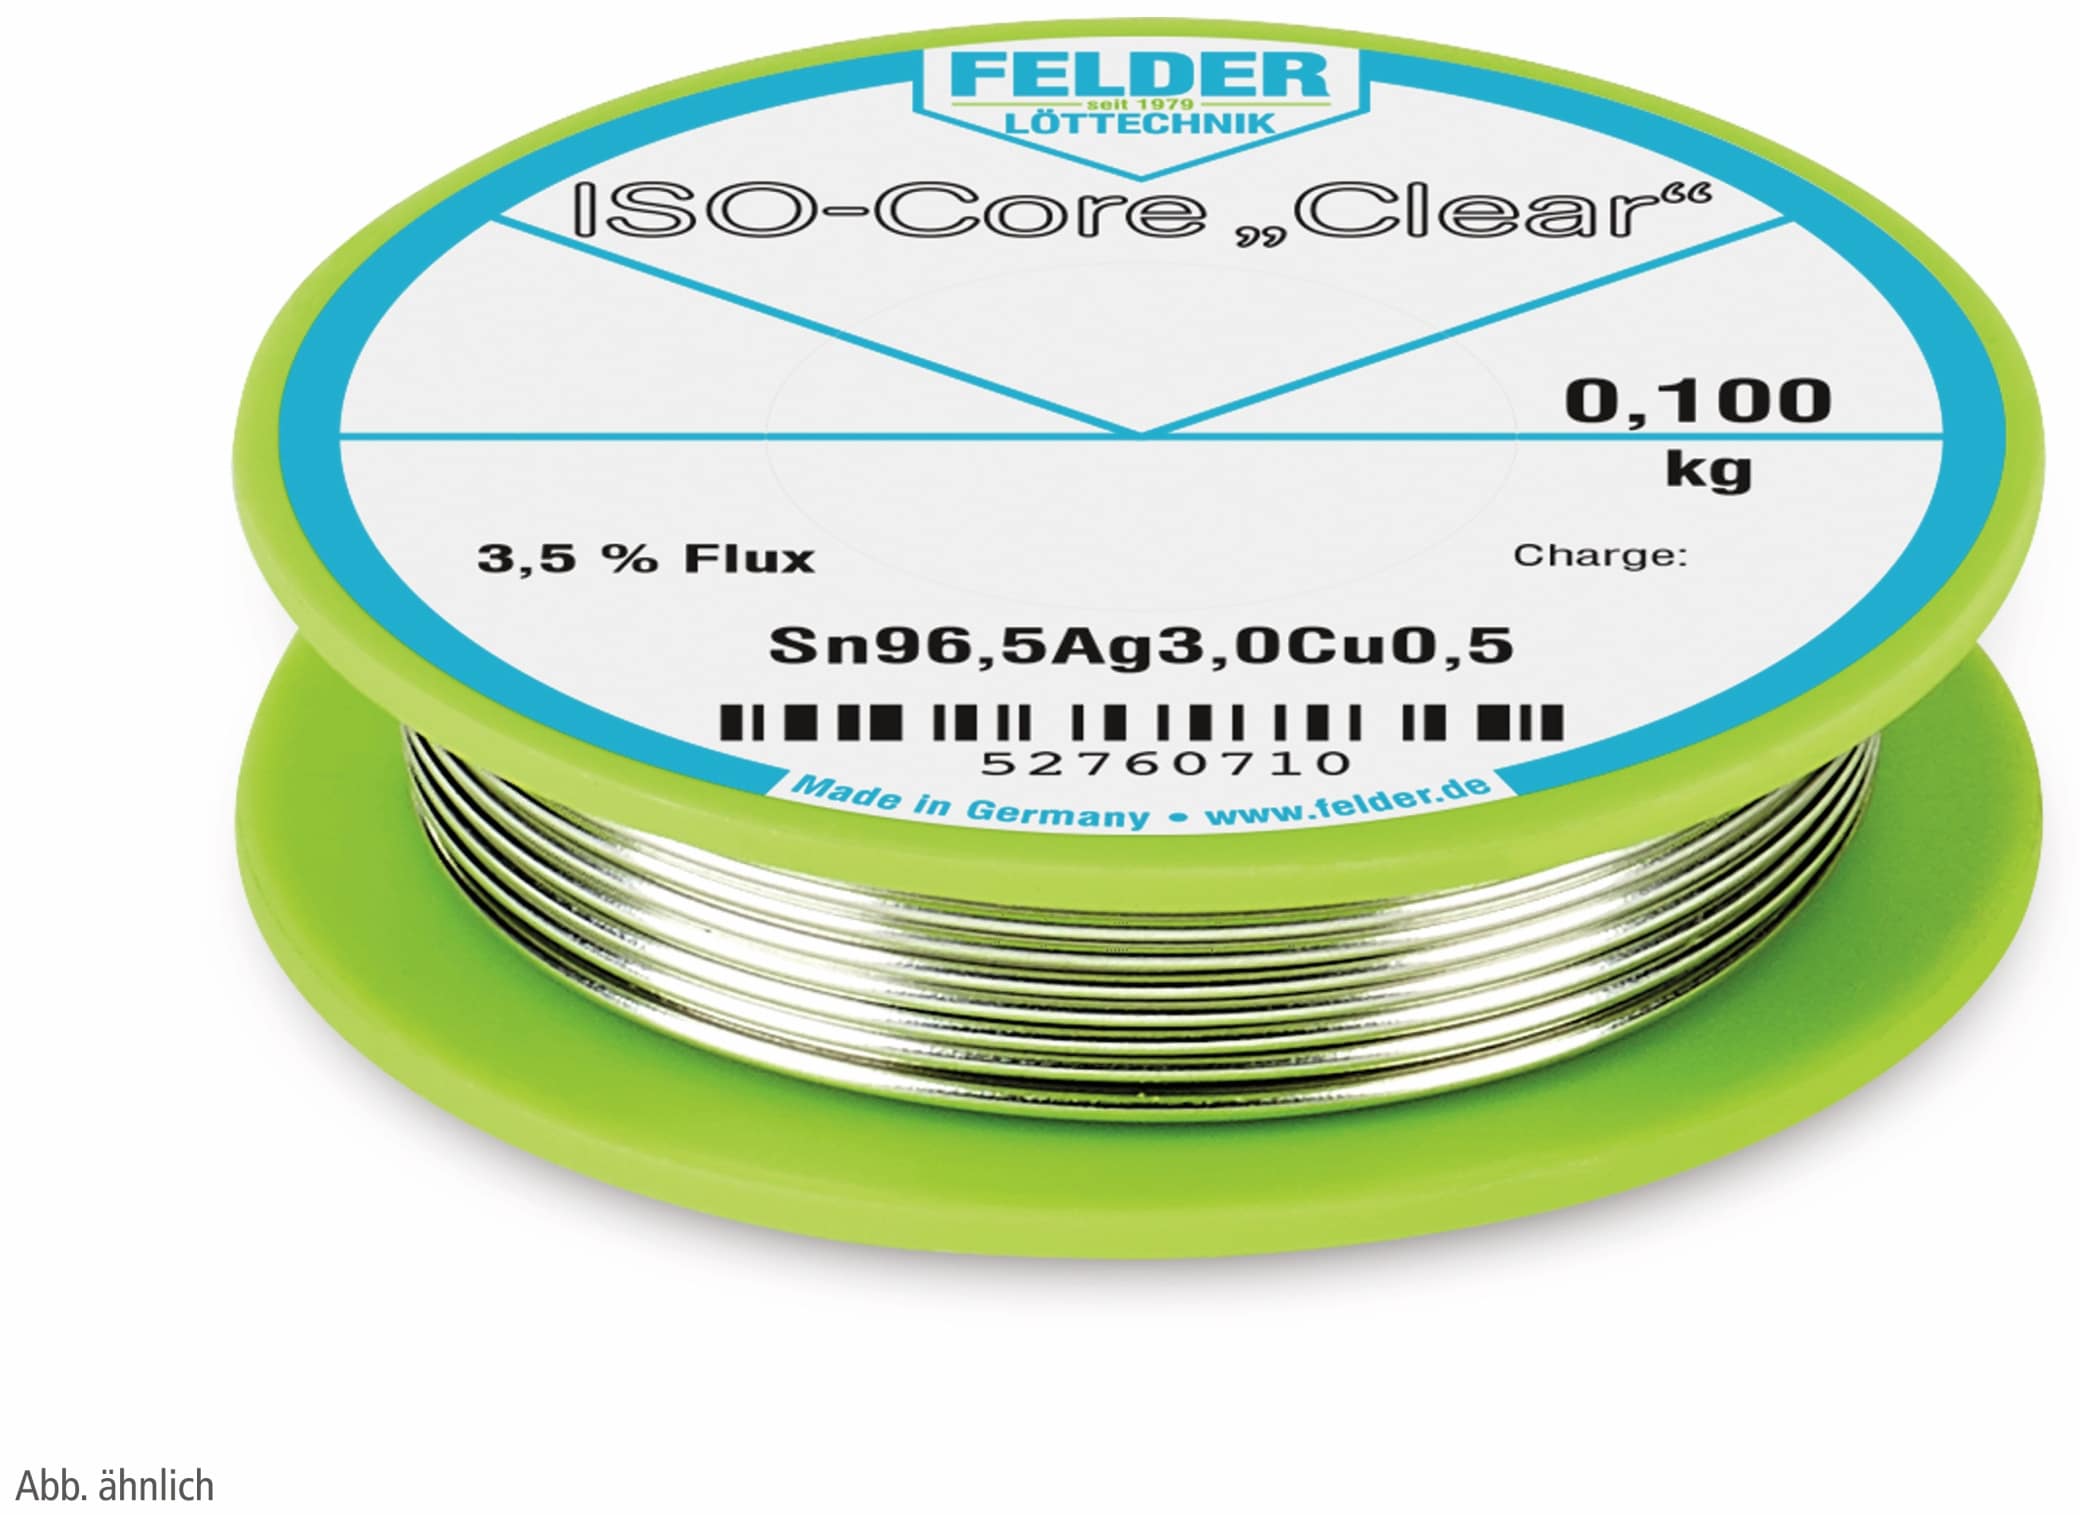 FELDER LÖTTECHNIK Lötdraht ISO-Core "Clear", 1,0 mm, 100 g